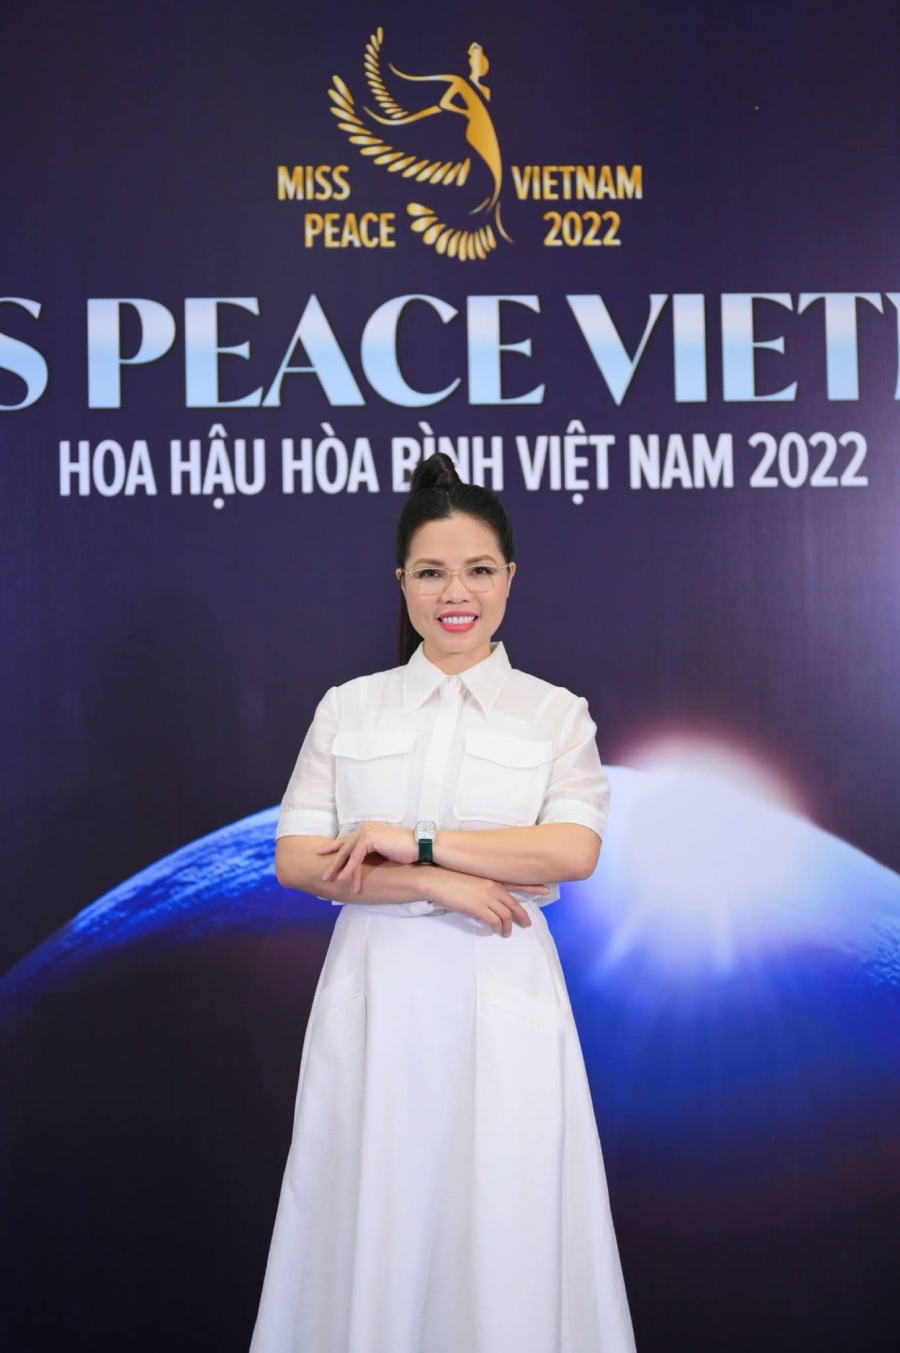 Miss Peace do H'Hen Niê làm đại sứ bị mất page, trưởng BTC nhắc đến công ty đối thủ - Ảnh 1